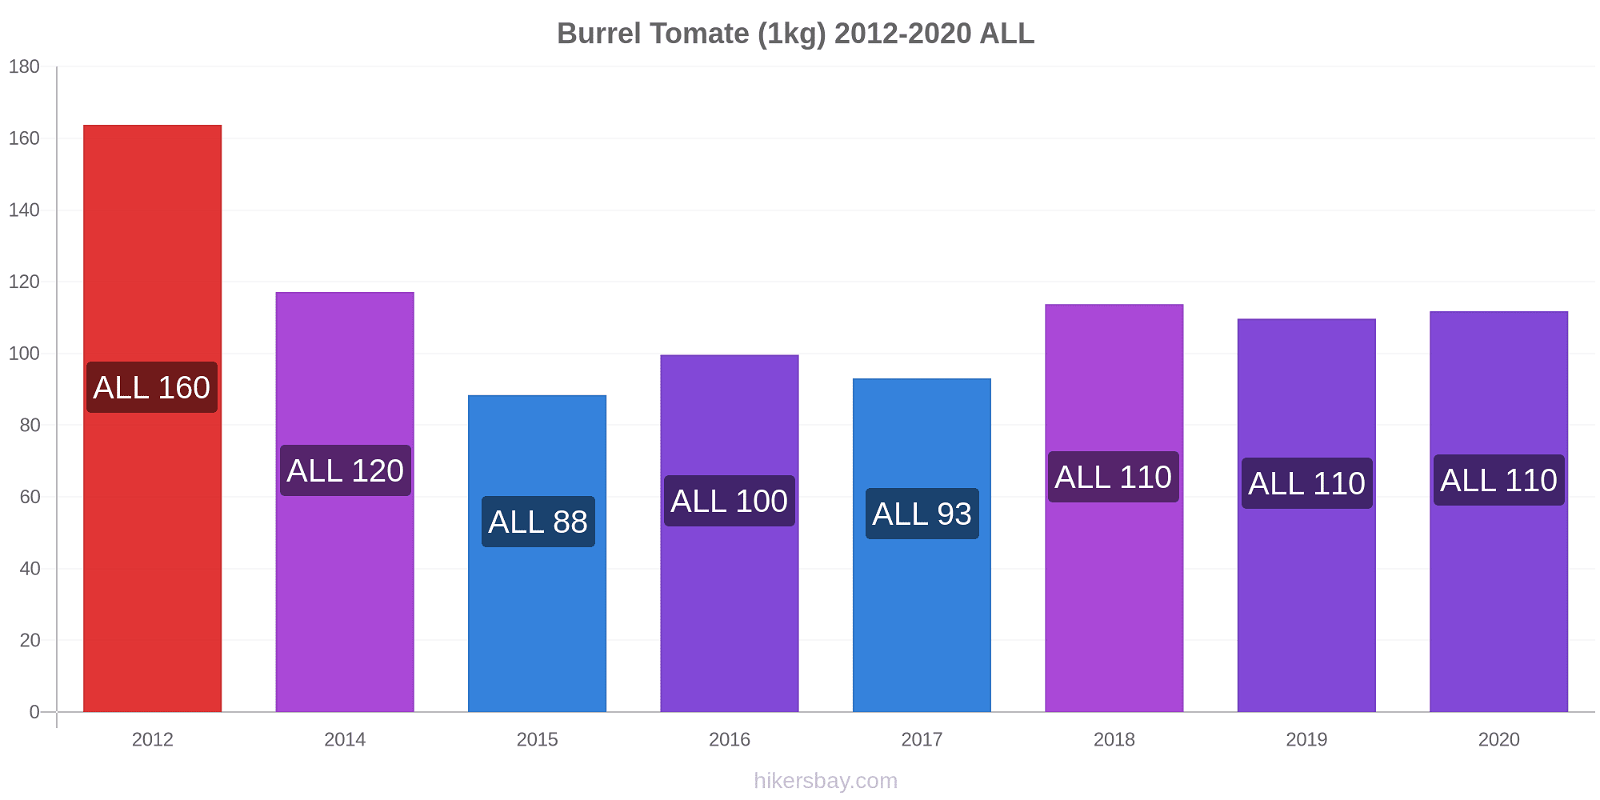 Burrel cambios de precios Tomate (1kg) hikersbay.com